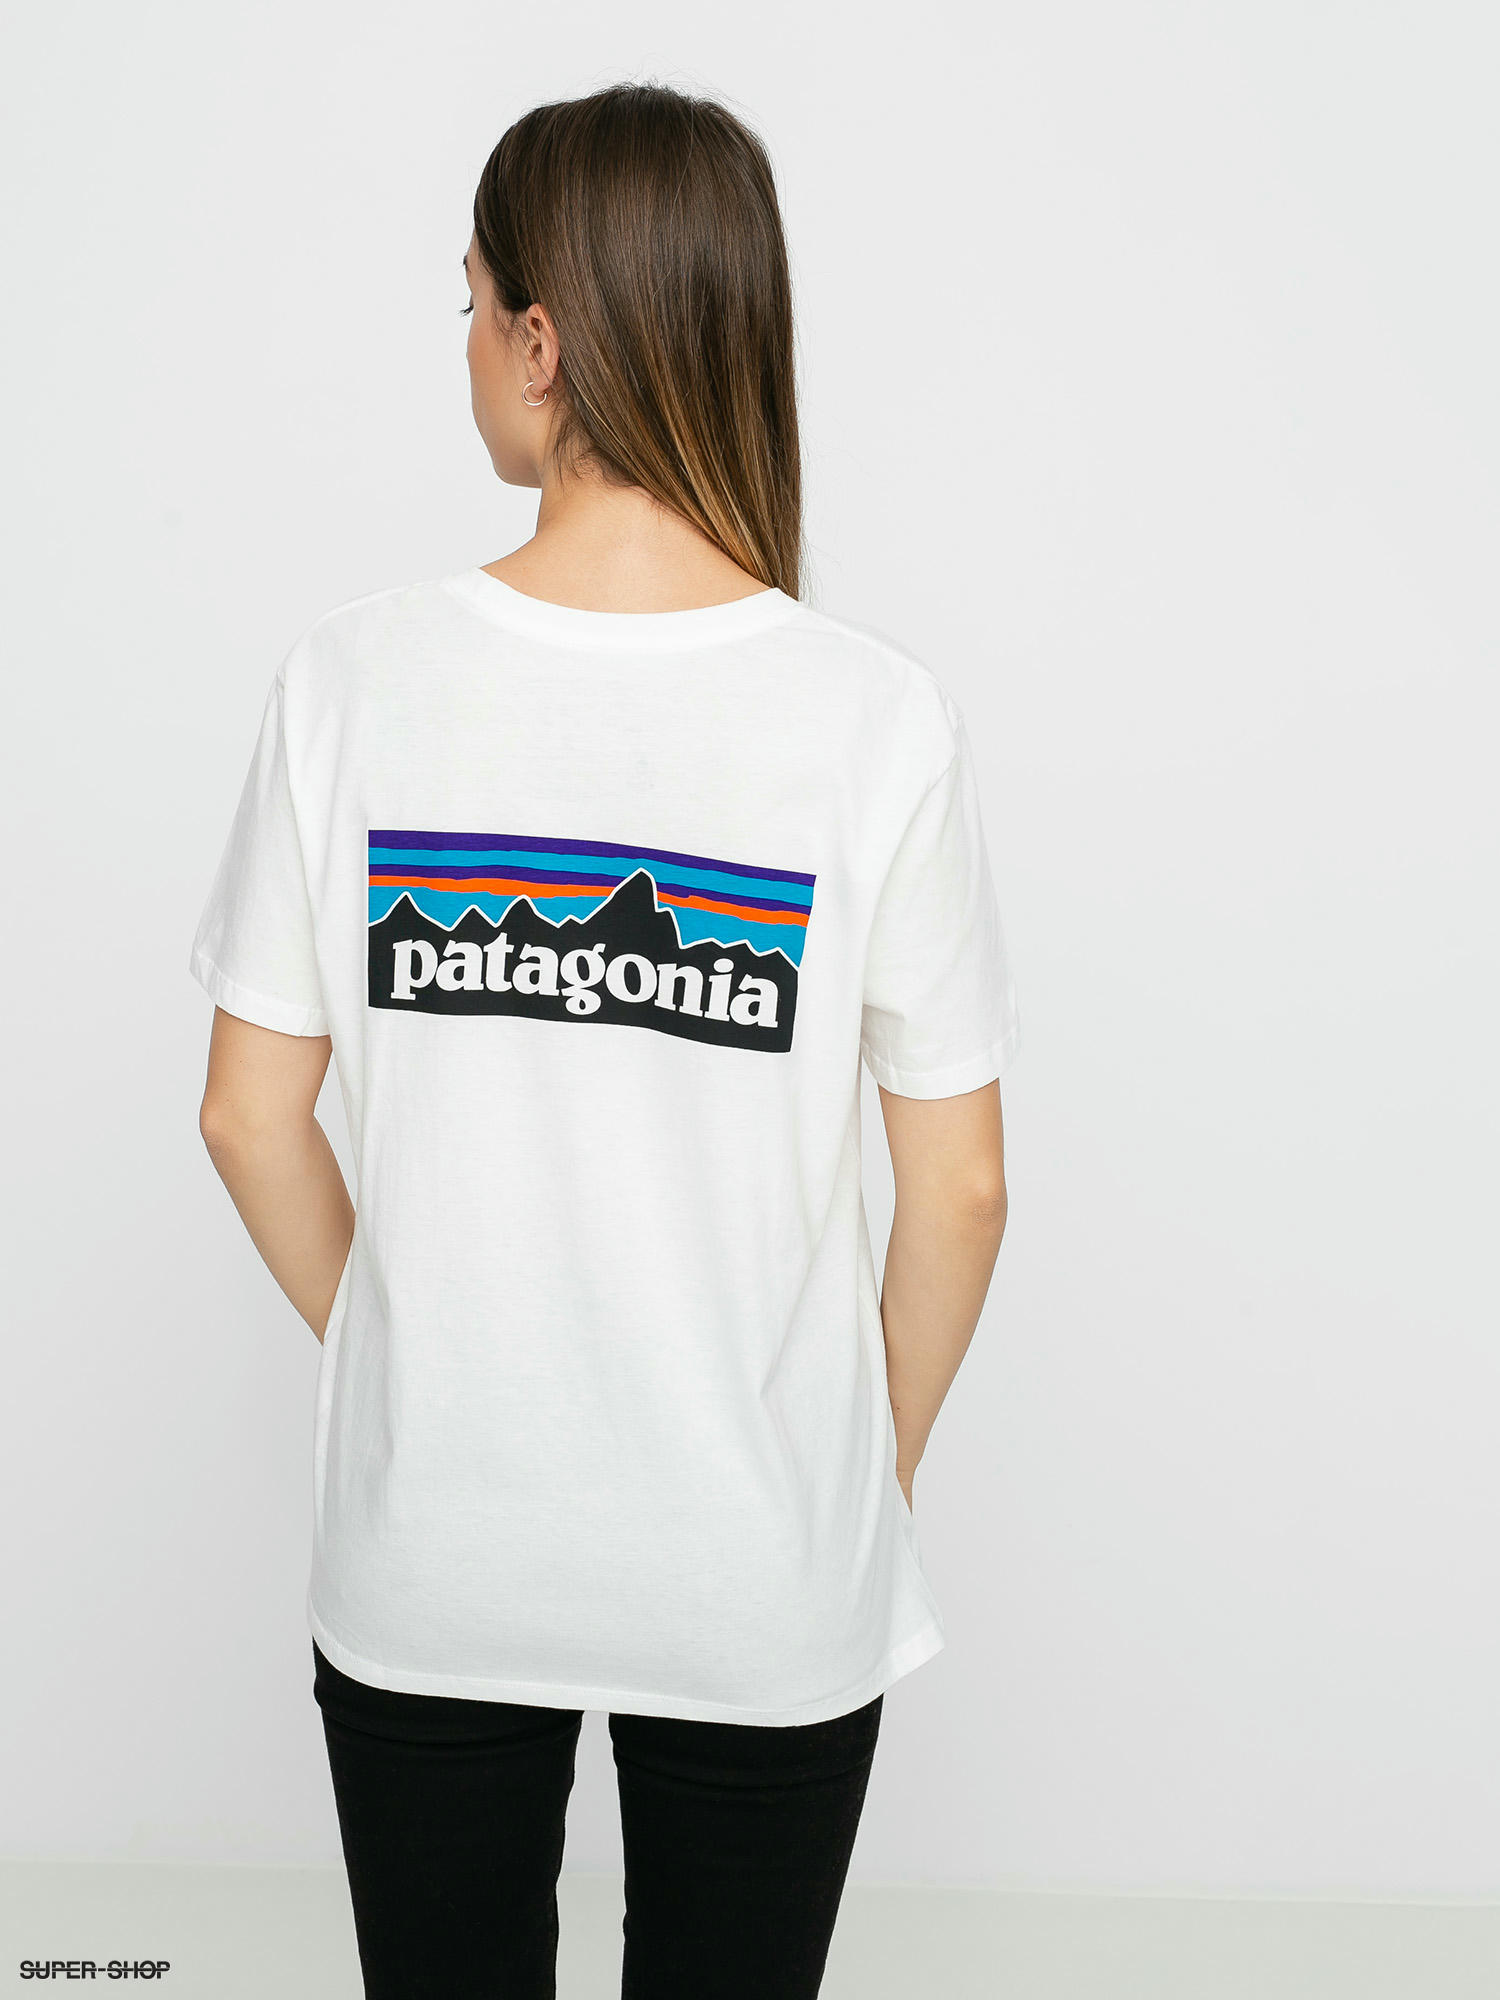 patagonia t shirt white